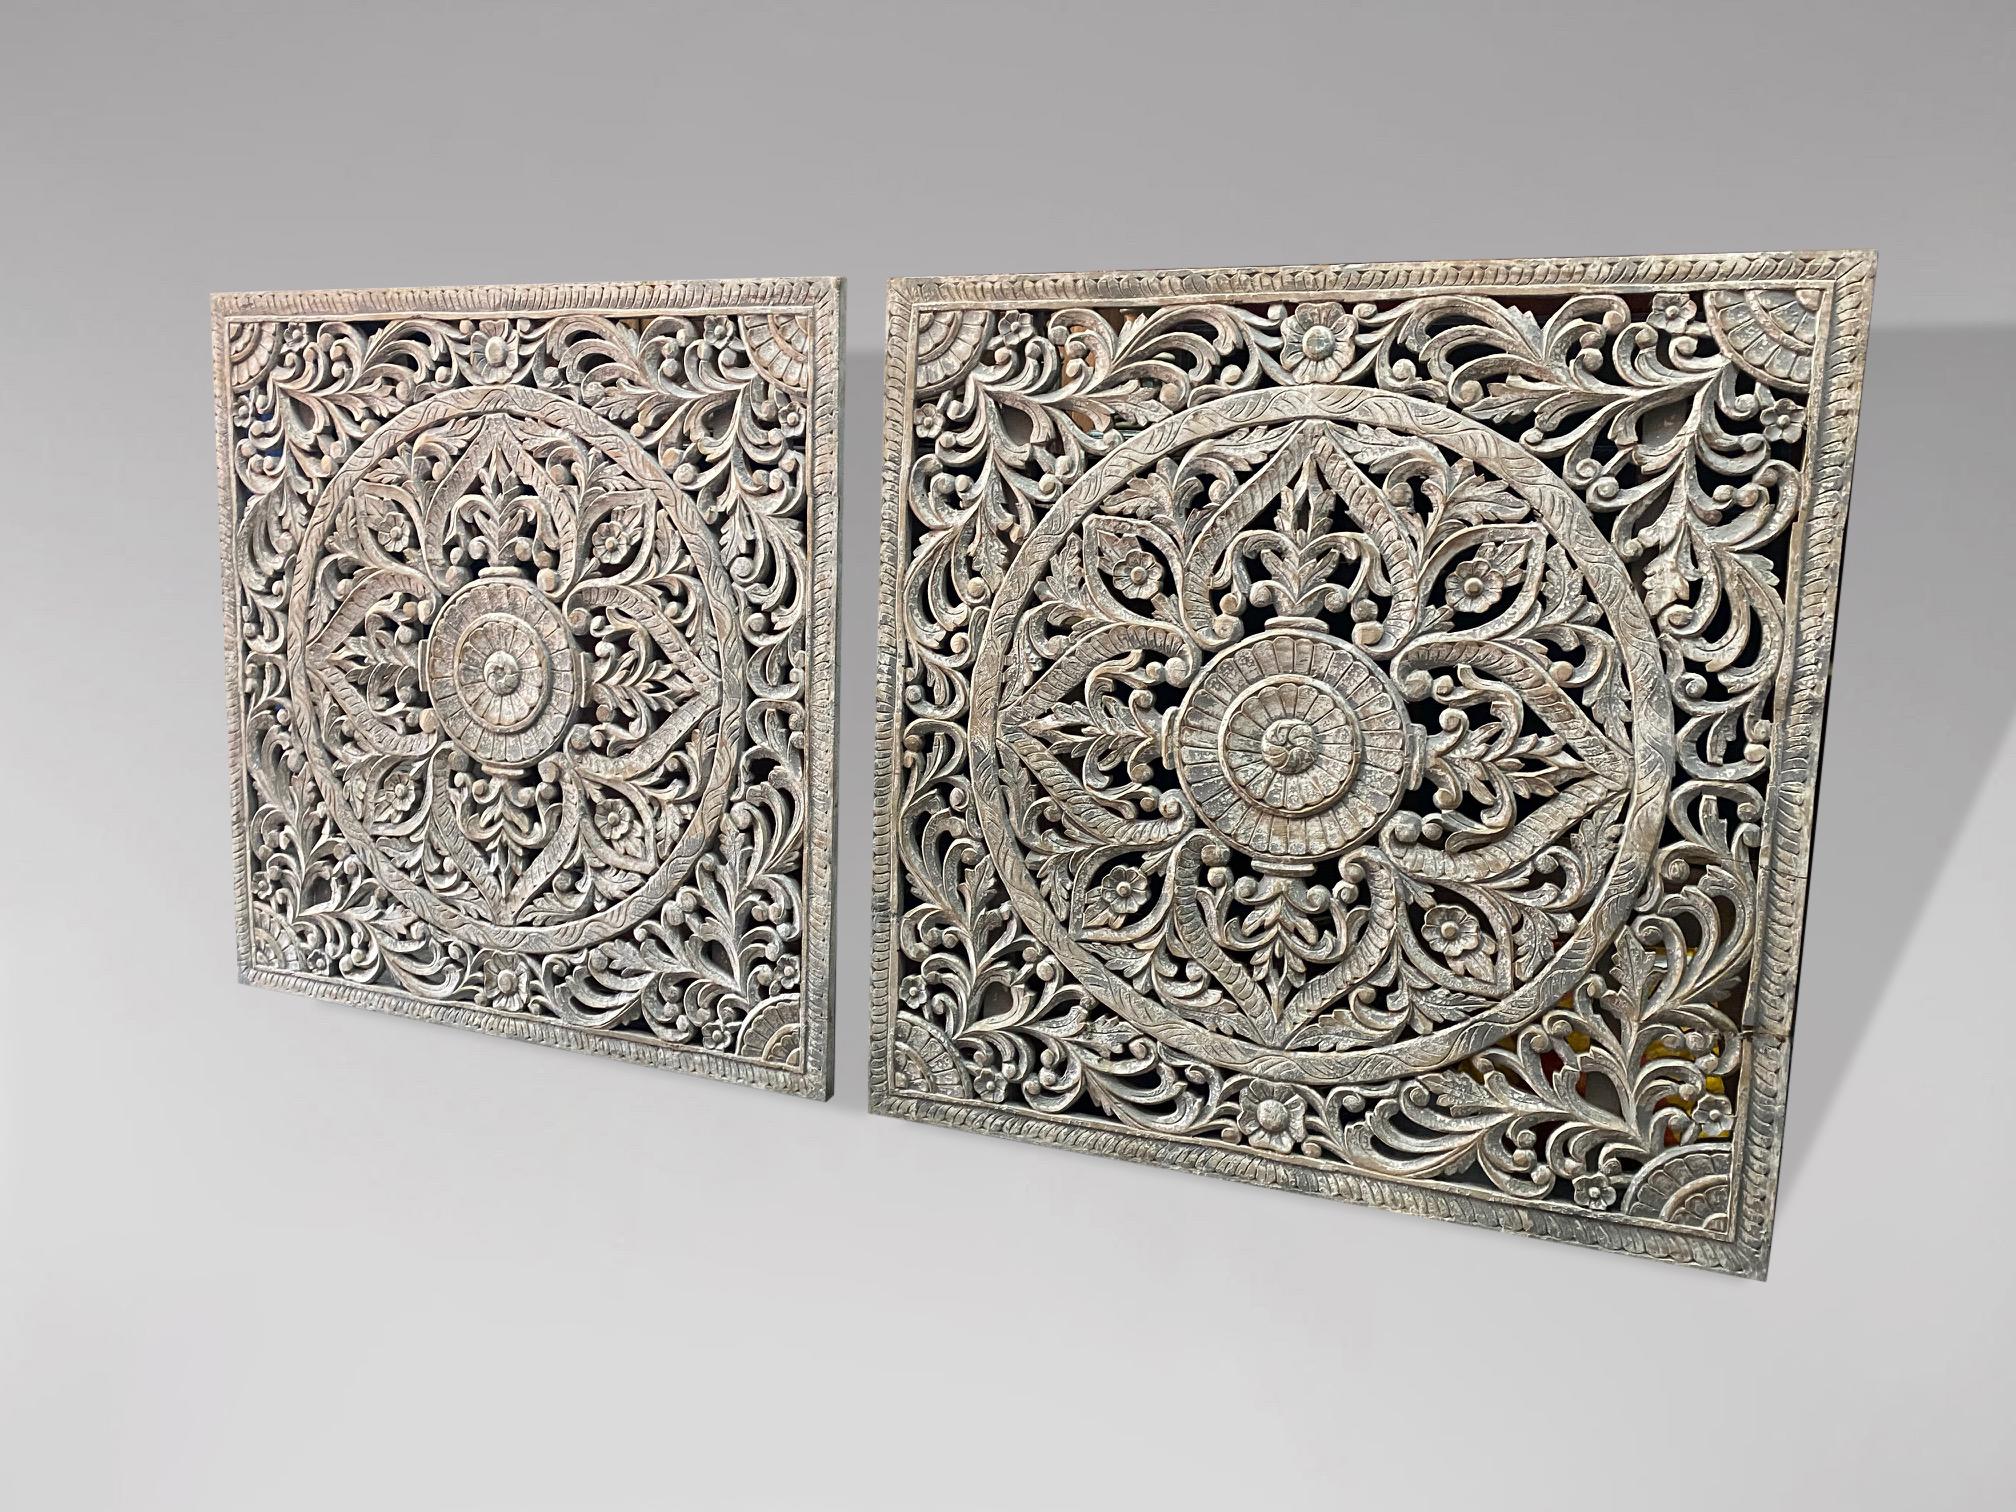 Une paire d'anciens panneaux en bois peint et sculpté très décoratifs provenant d'Inde. Elles pourraient être utilisées comme têtes de lit très décoratives. Magnifique paire de panneaux sculptés et peints avec beaucoup de caractère, avec de bonnes